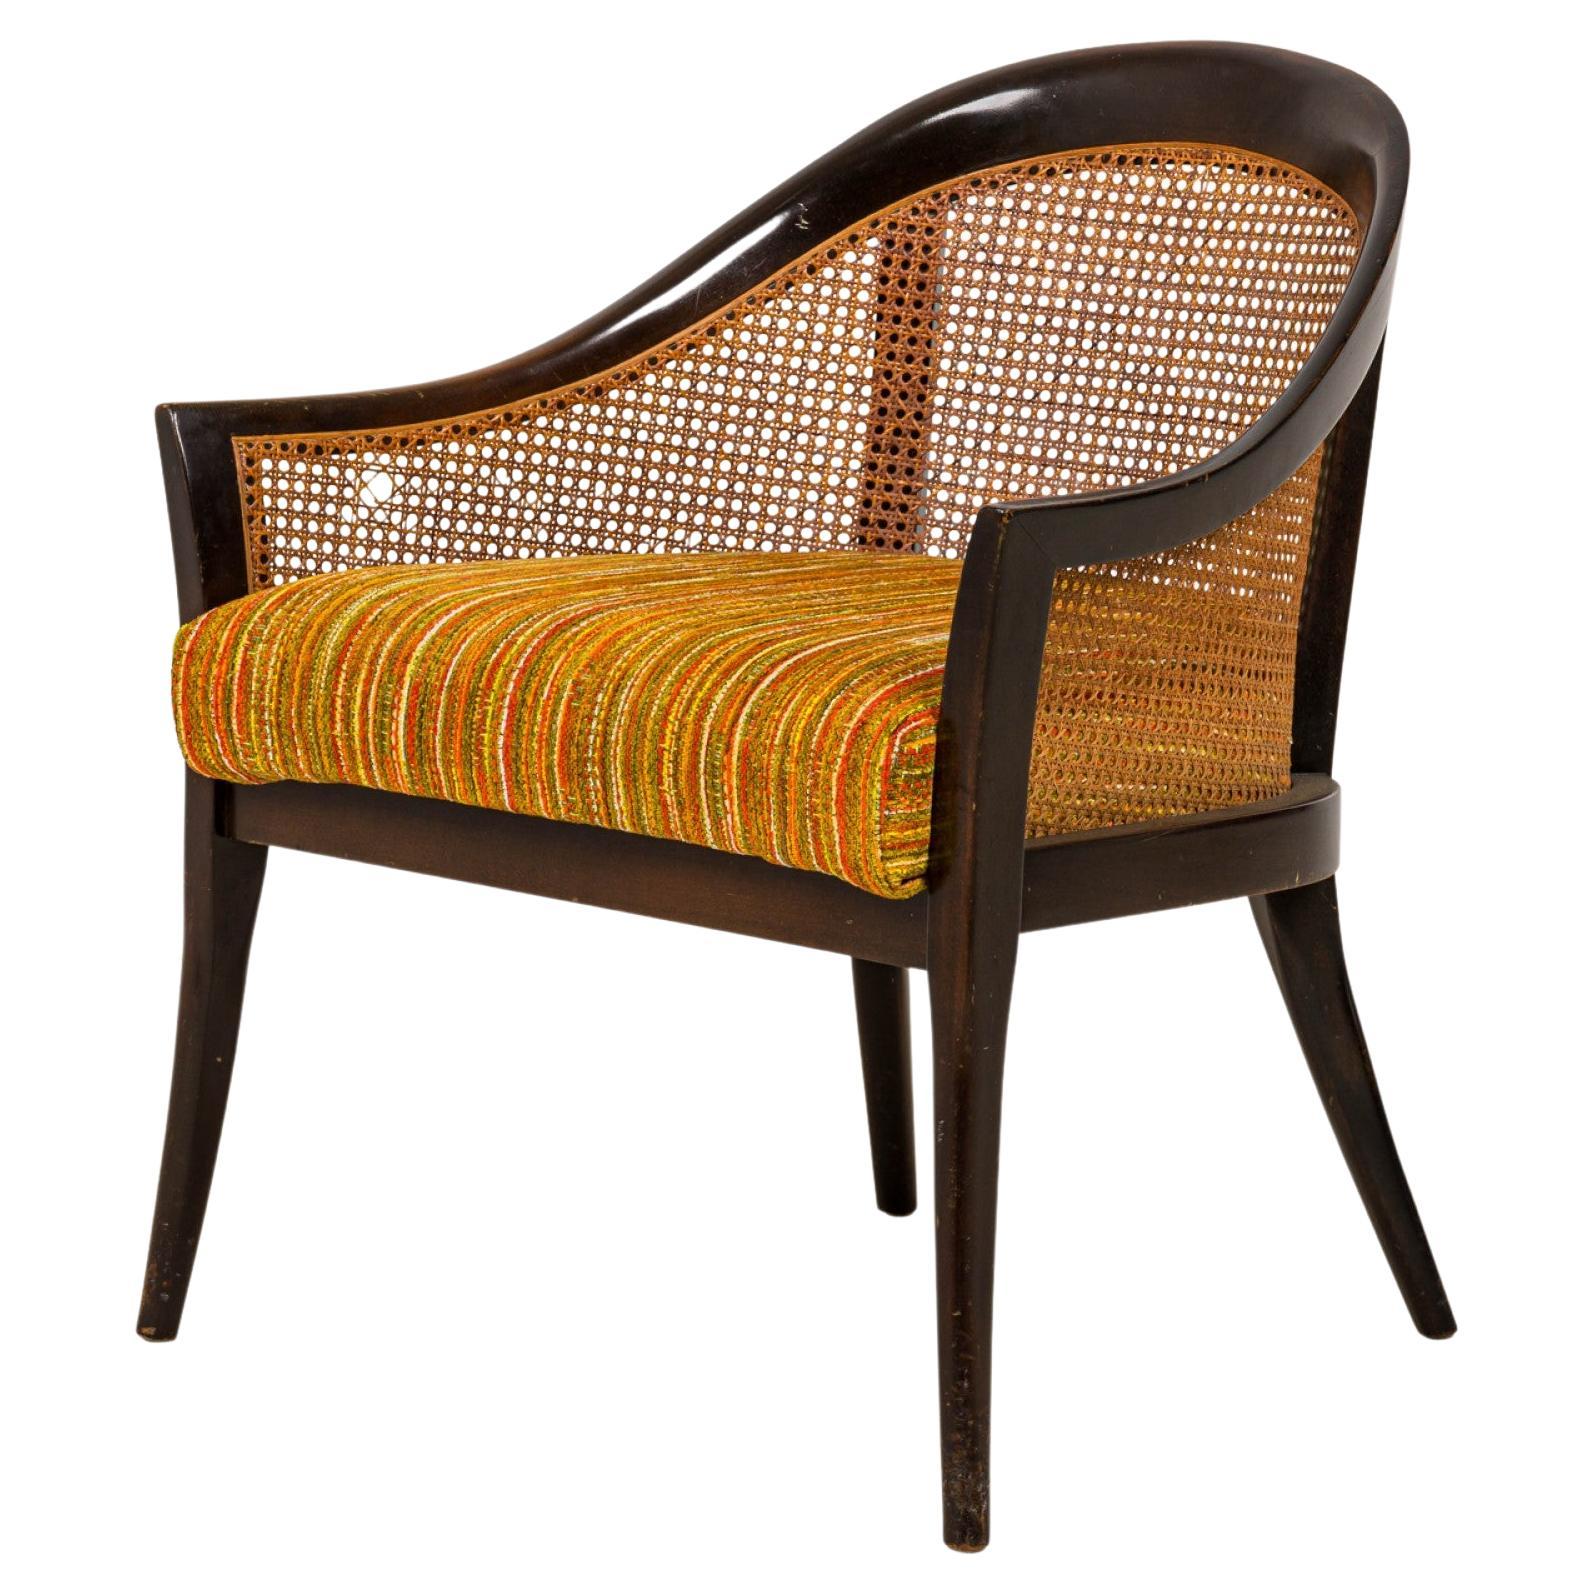 Harvey Probber Sessel aus dunklem Holz, Schilfrohr und gestreifter Polsterung